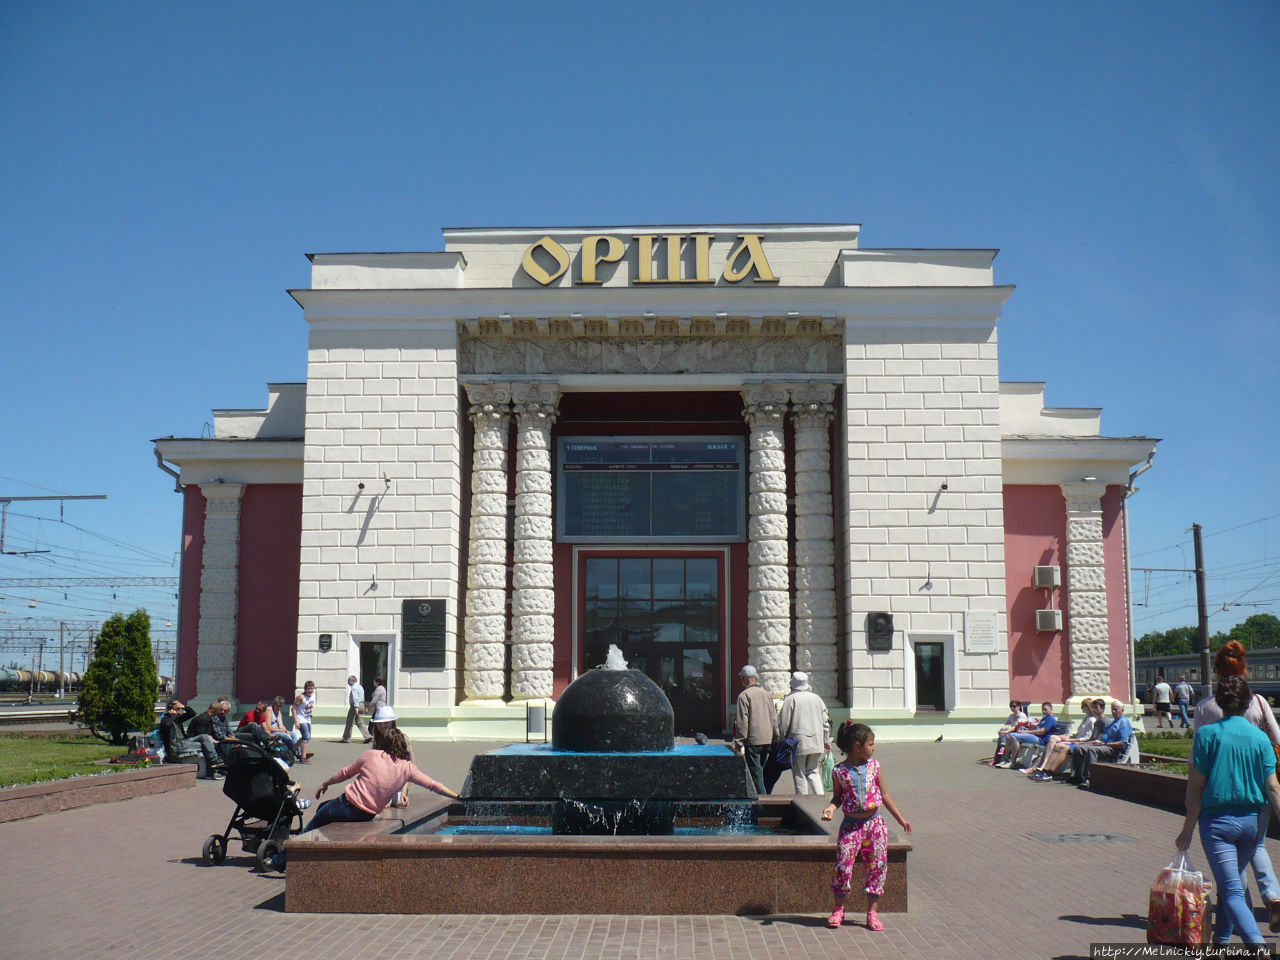 Восточные ворота Беларуси. Небольшая прогулка по Орше Орша, Беларусь